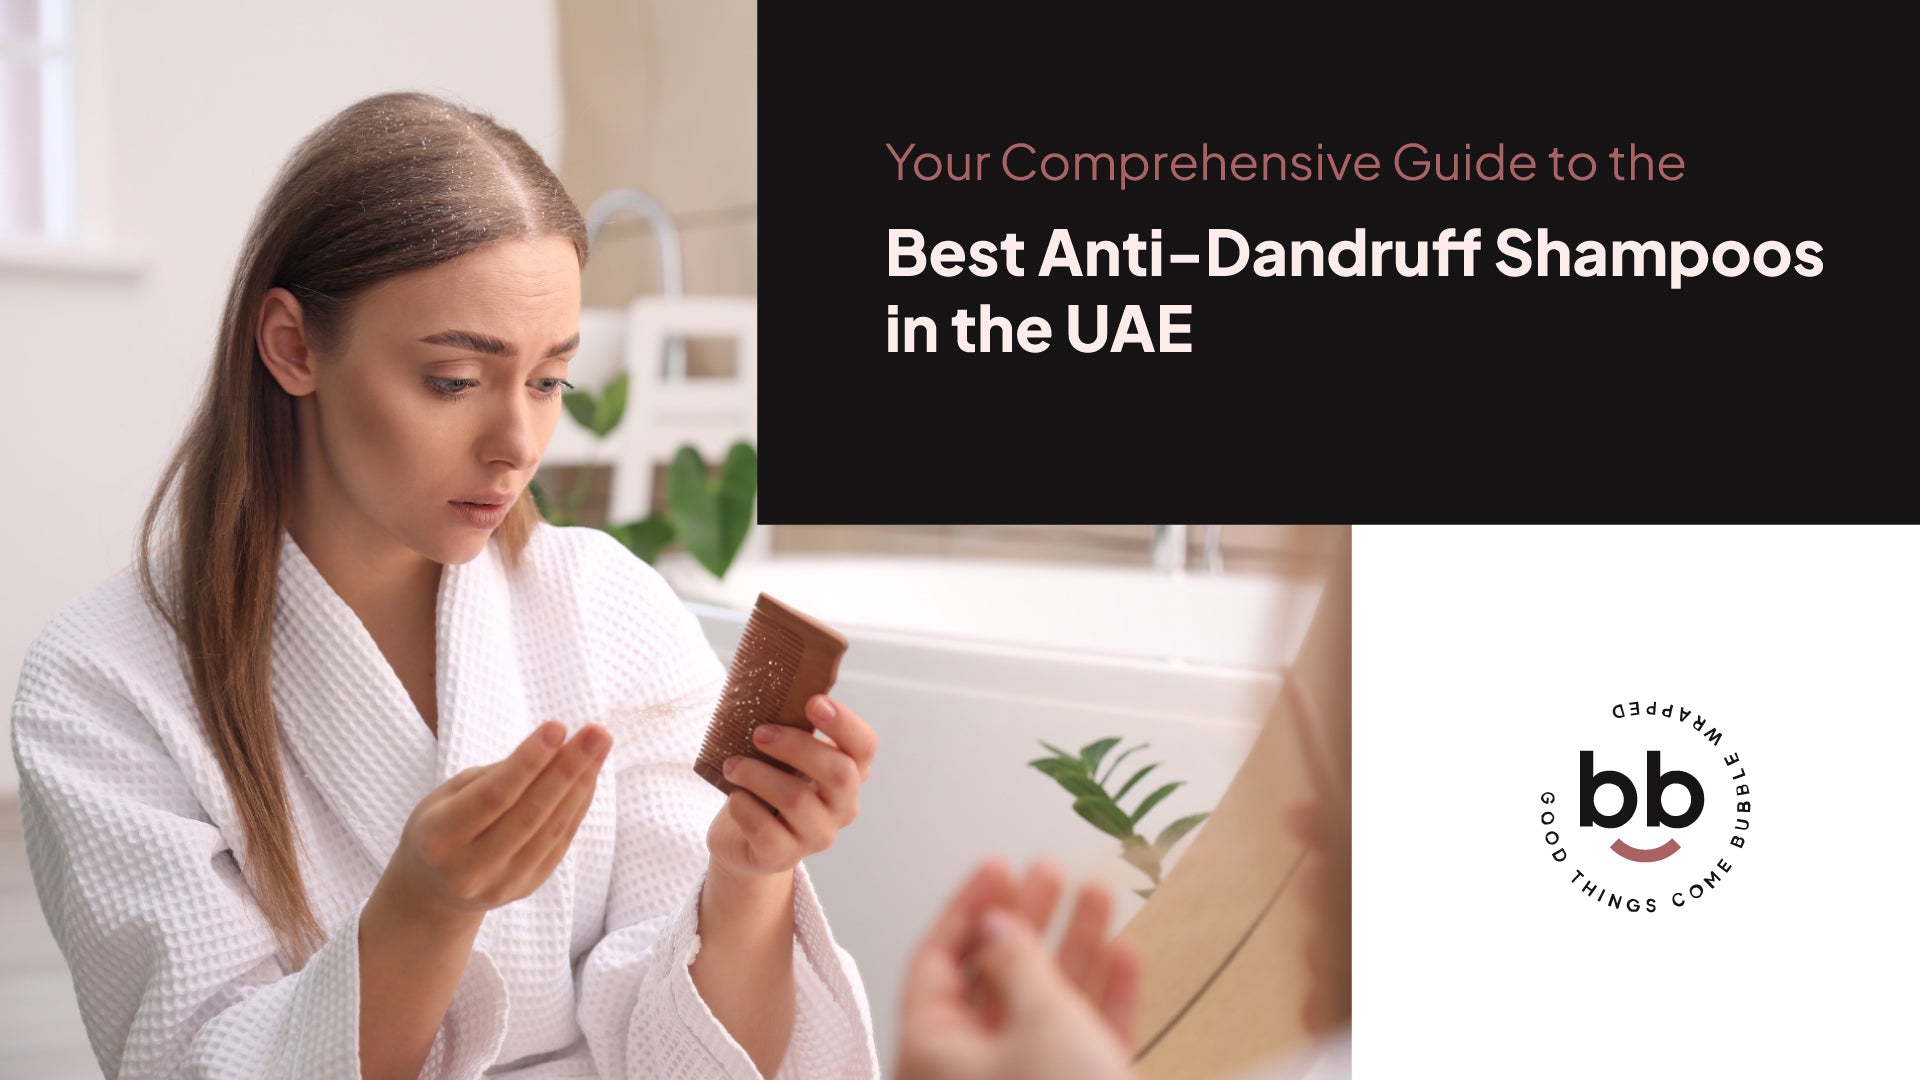 دليلكِ الشامل إلى أفضل شامبو لمكافحة قشرة الشعر في الإمارات العربية المتحدة